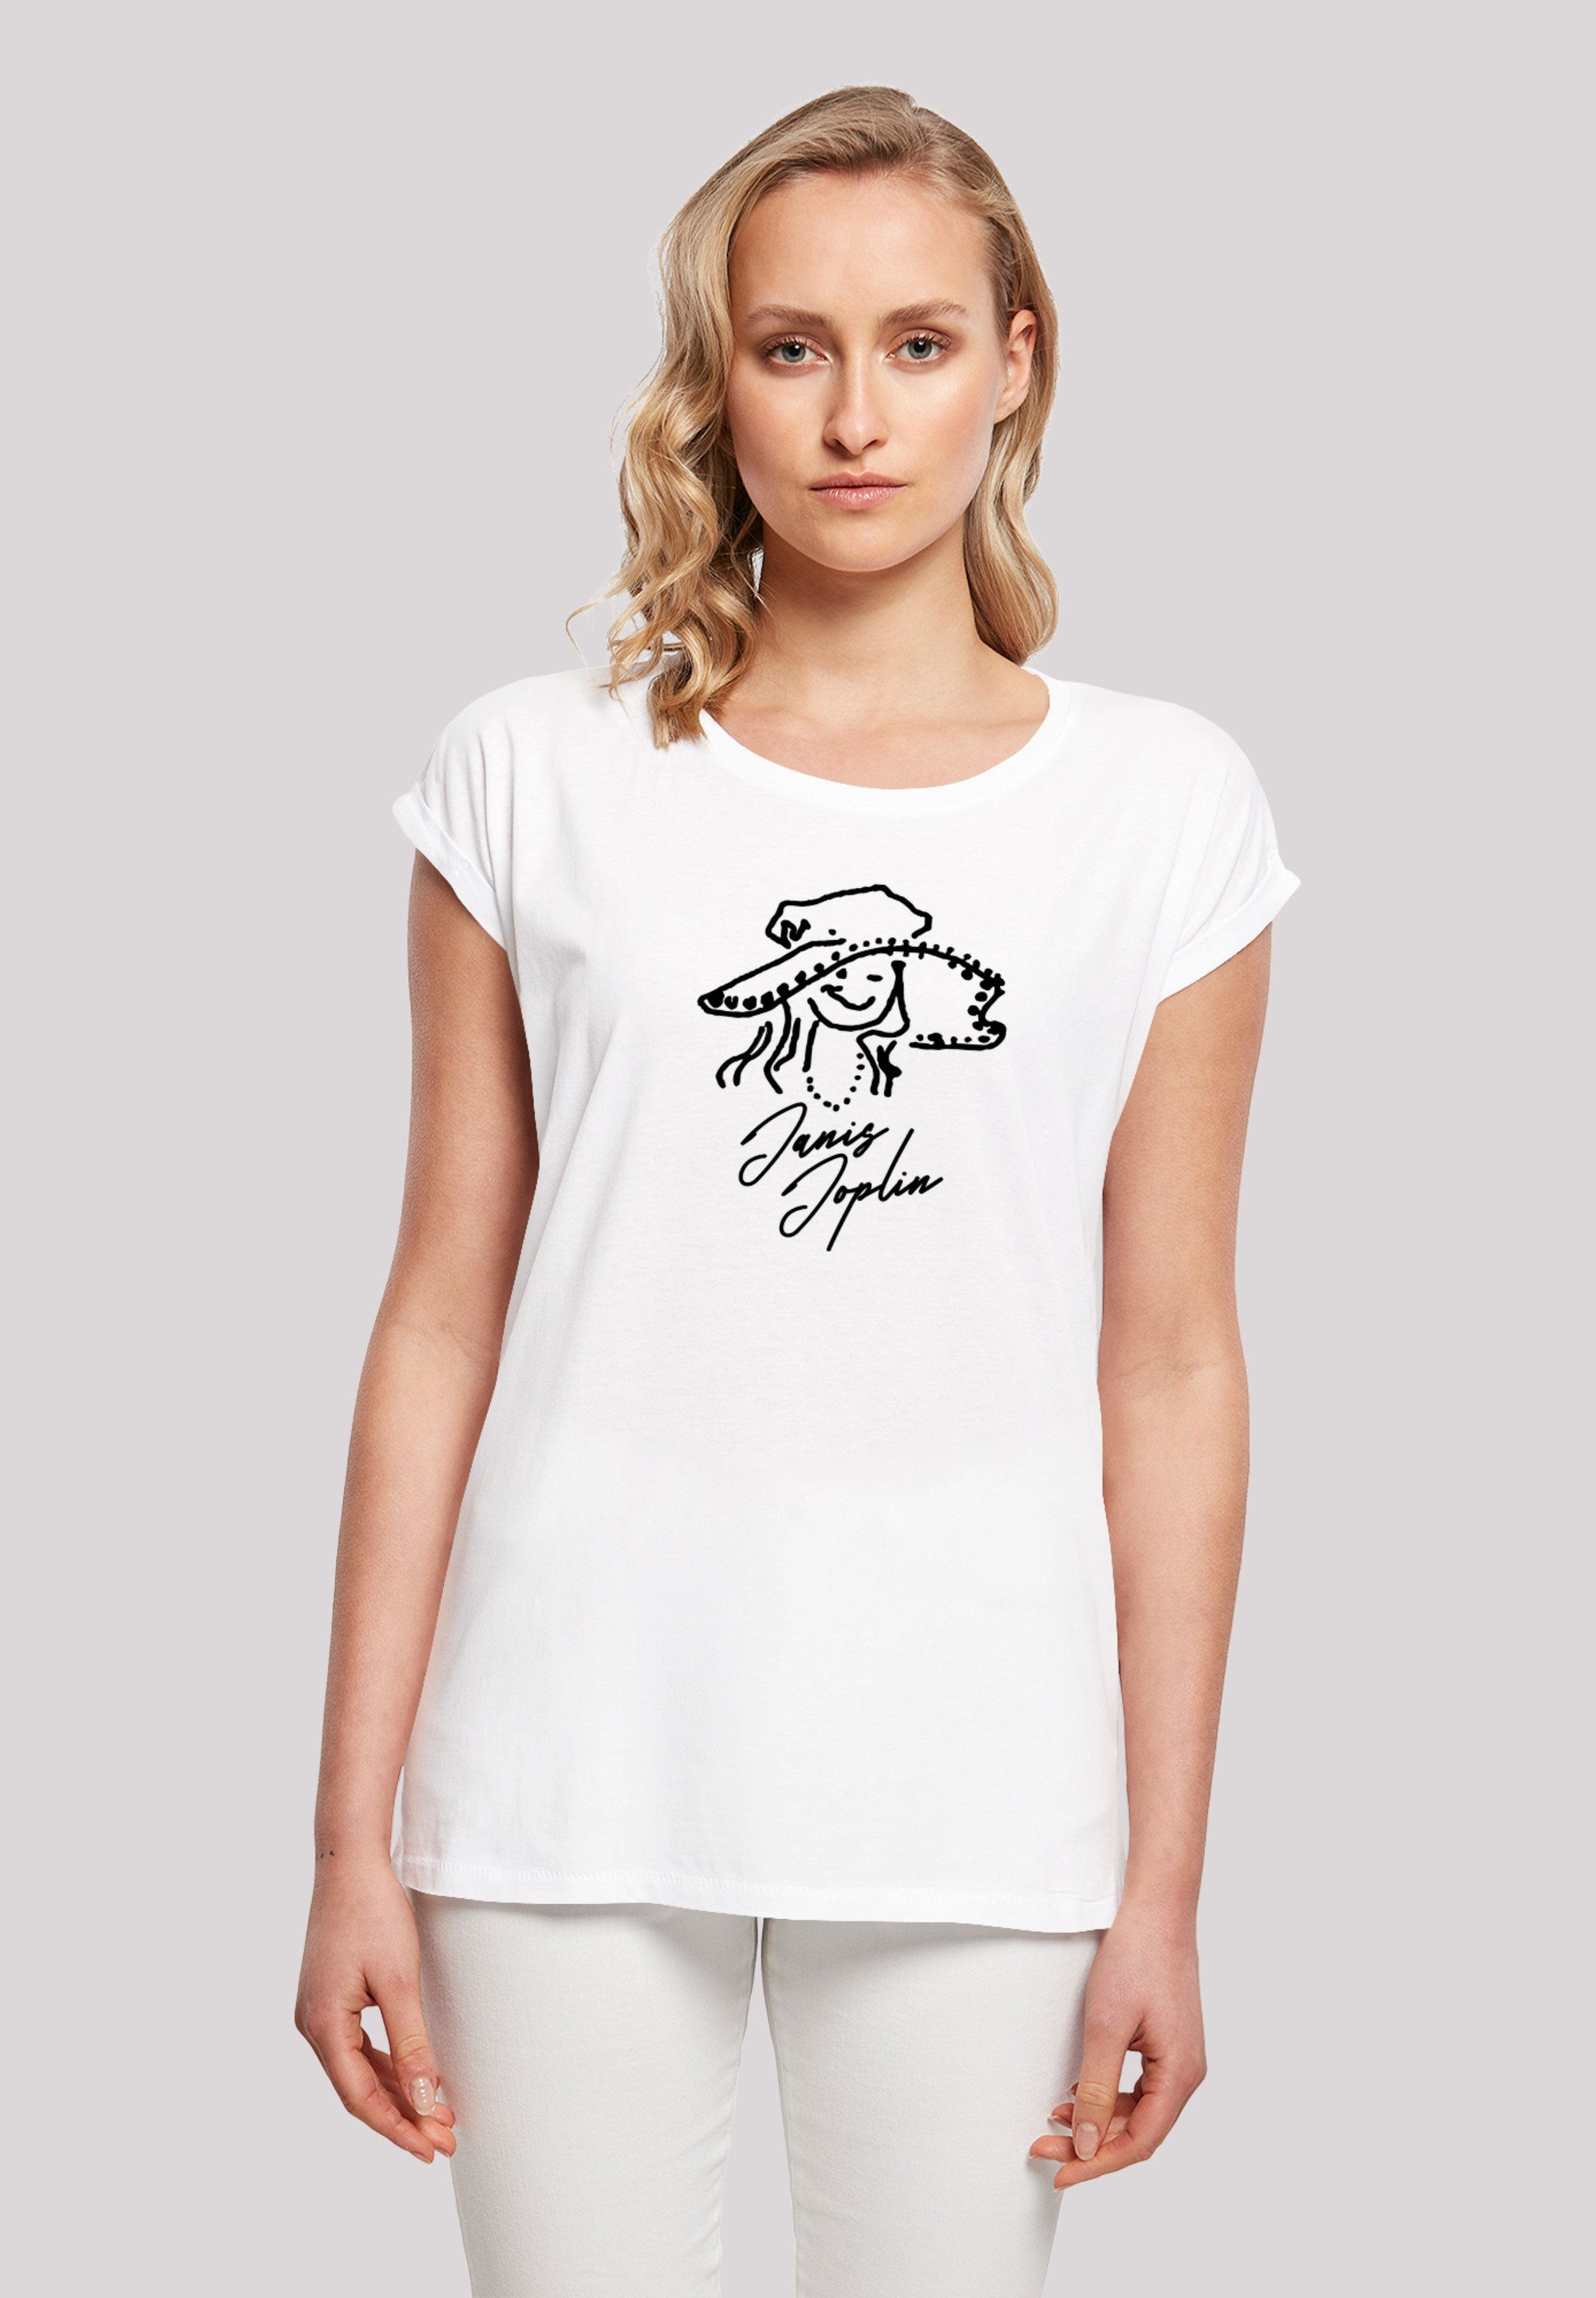 Joplin Janis T-Shirt Joplin lizenziertes Merch,Regular-Fit,Kurze T-Shirt Ärmel,Bandshirt, Sketch F4NT4STIC Damen,Premium Offiziell Janis